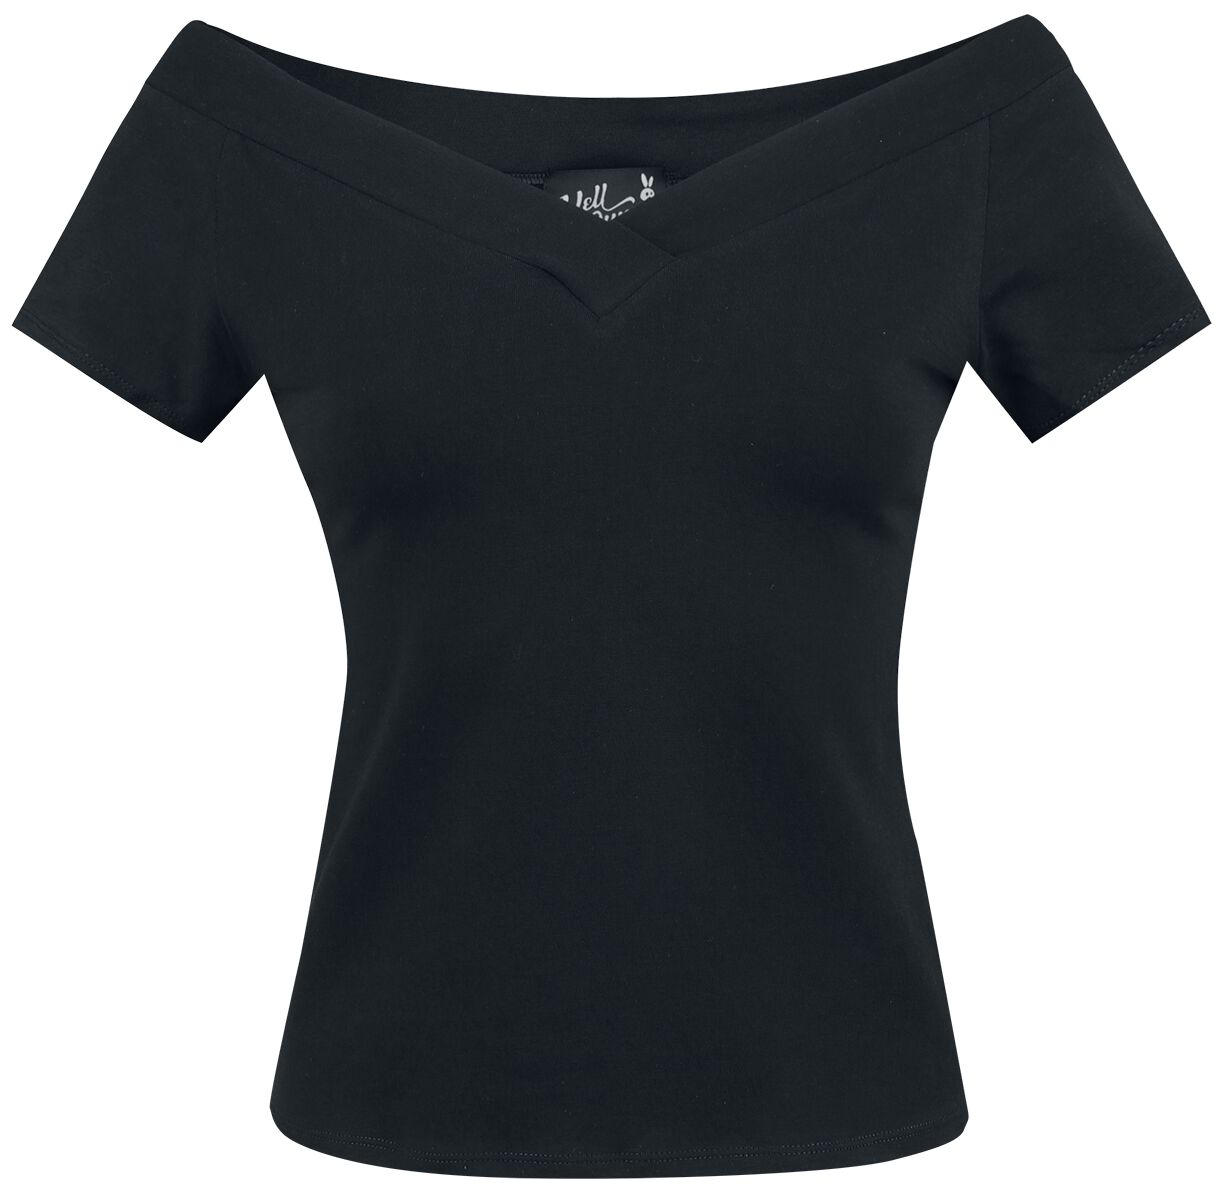 T-Shirt Manches courtes Rockabilly de Hell Bunny - Haut Alex - XS à L - pour Femme - noir